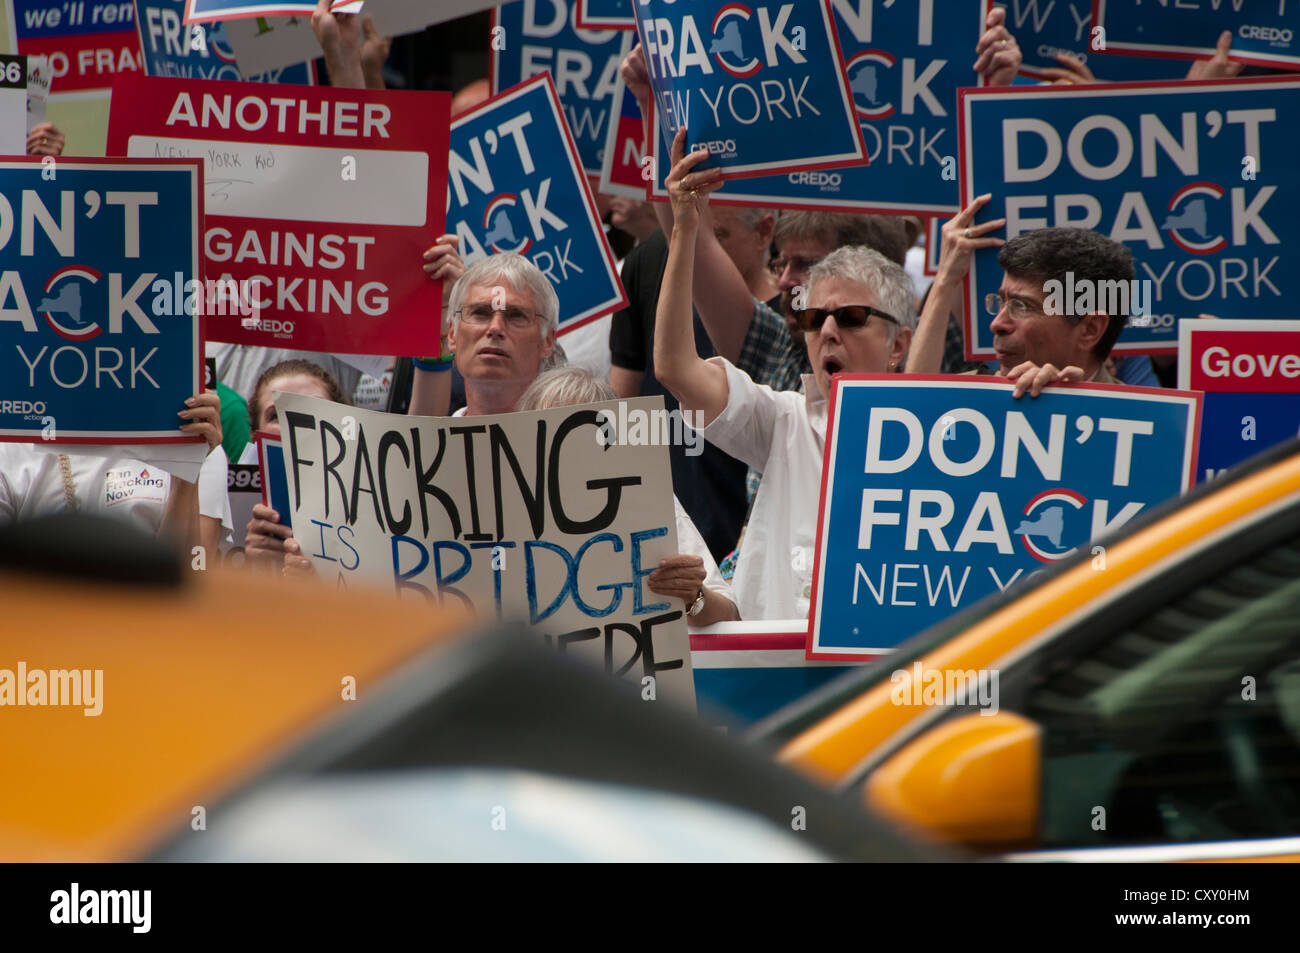 Aktivisten demonstrieren in Manhattan Protest gegen Fracking für Erdgas in New York NY Gouverneur Cuomo Hotel. Stockfoto